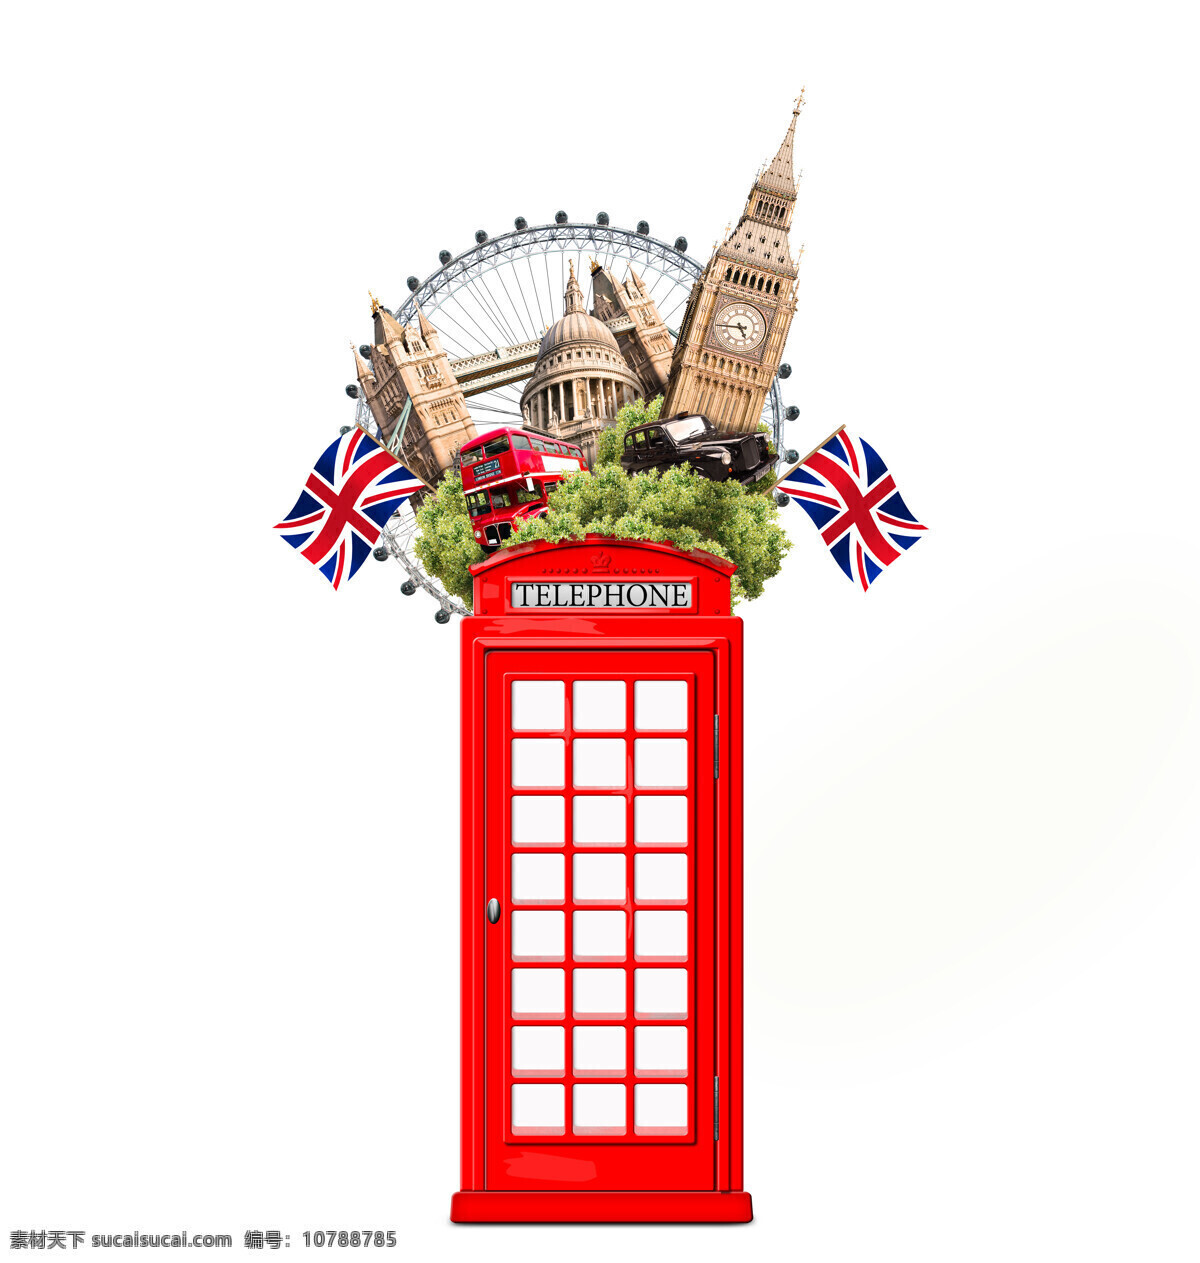 英国旅游 伦敦电话亭 创意旅游 旅游 英国 英国风景 欧洲游 英国标志建筑 英国著名建筑 英国景点 伦敦眼 大本钟 伦敦塔桥 旅游素材